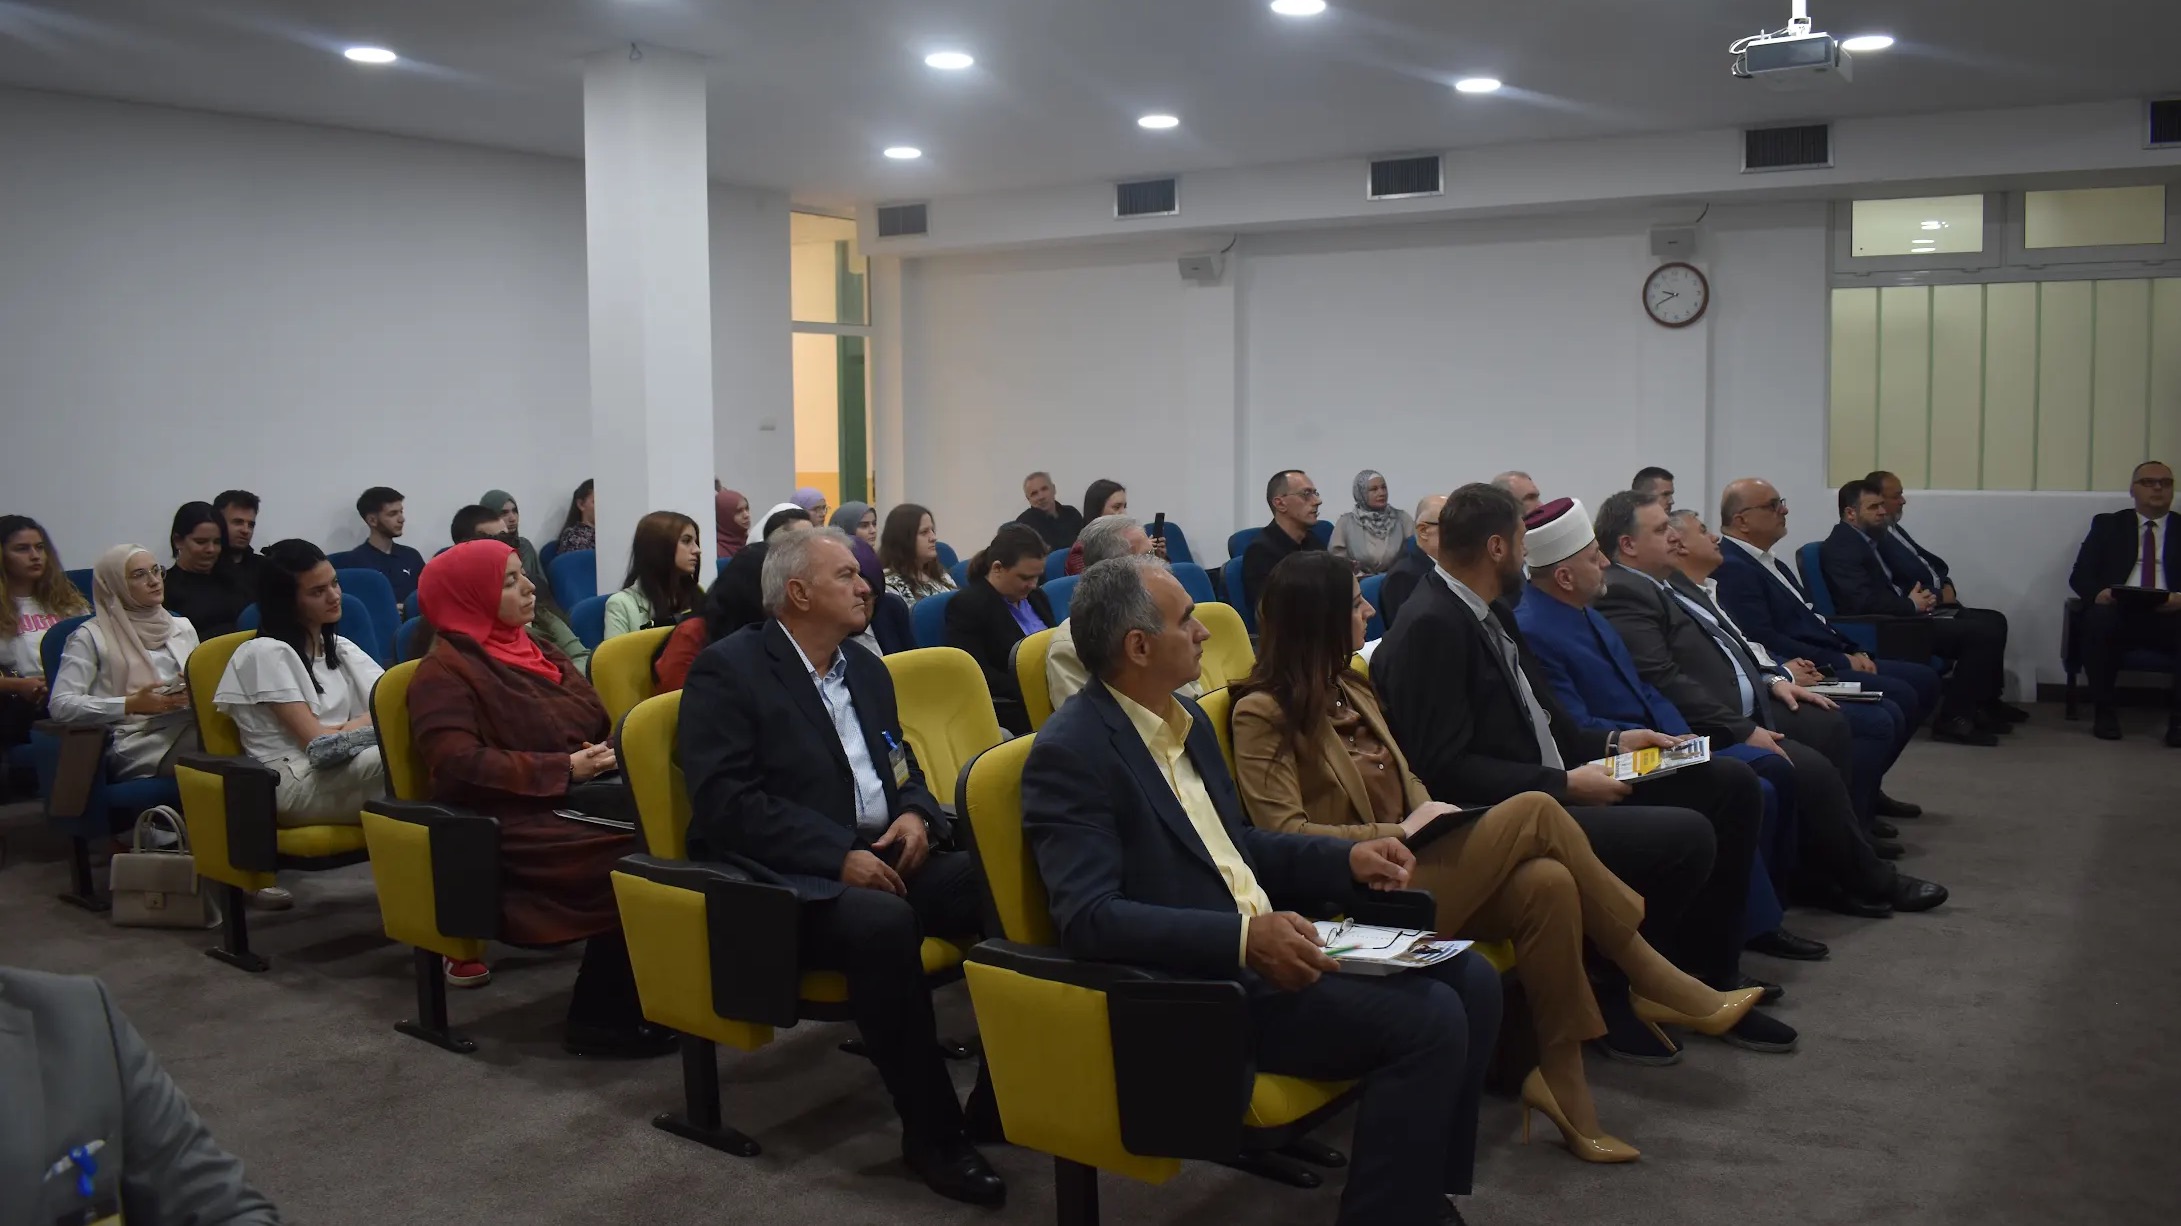 Međunarodna naučno-stručna konferencija “Uloga savremenog odgoja i obrazovanja u prevenciji društveno-moralnih devijacija” održana na IPF-u u Bihaću